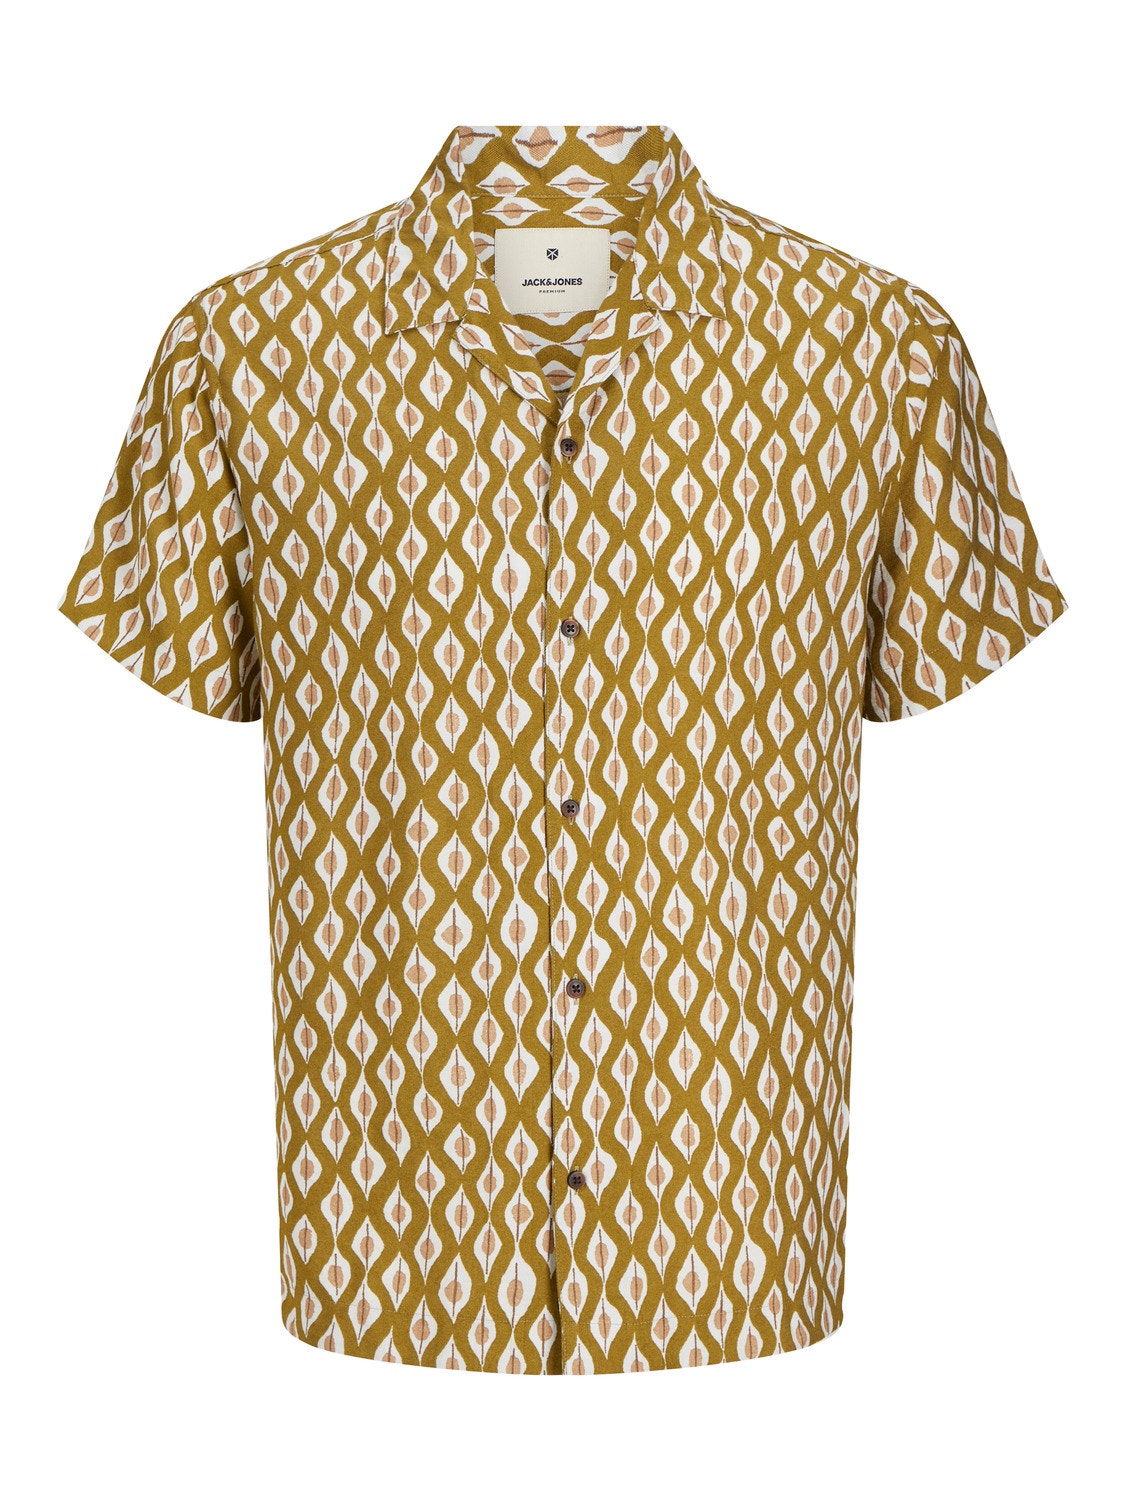 Jack & Jones Comfort Fit Resort shirt -Fir Green - 12255172